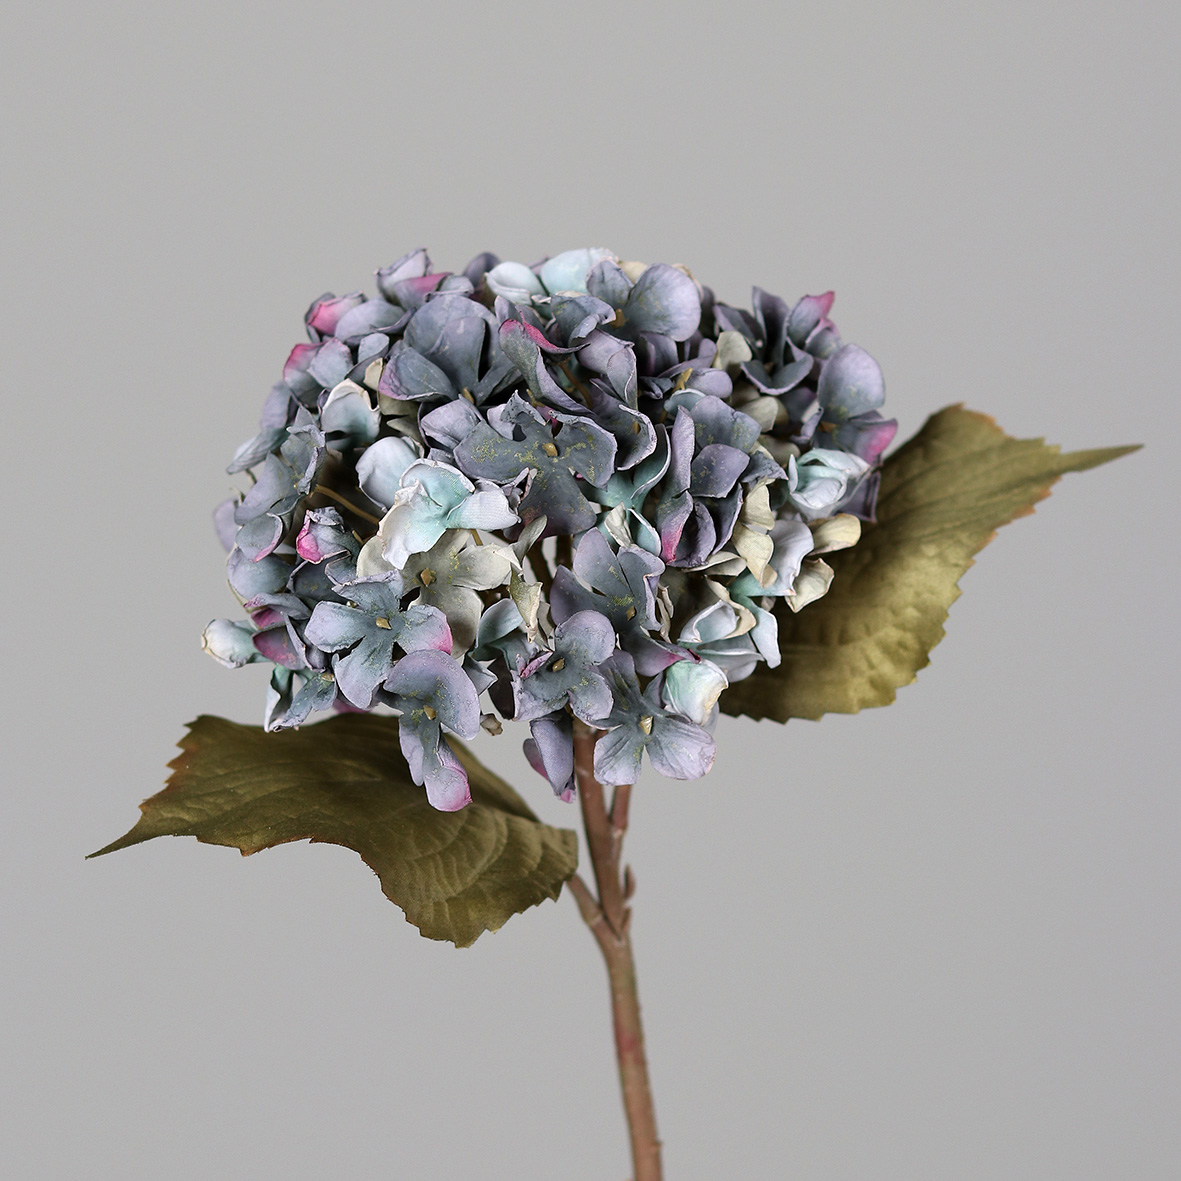 Hortensie Nature 45cm blau-grün DP Seidenblumen Kunstlbumen künstliche Blumen Hortensien Hydrangea